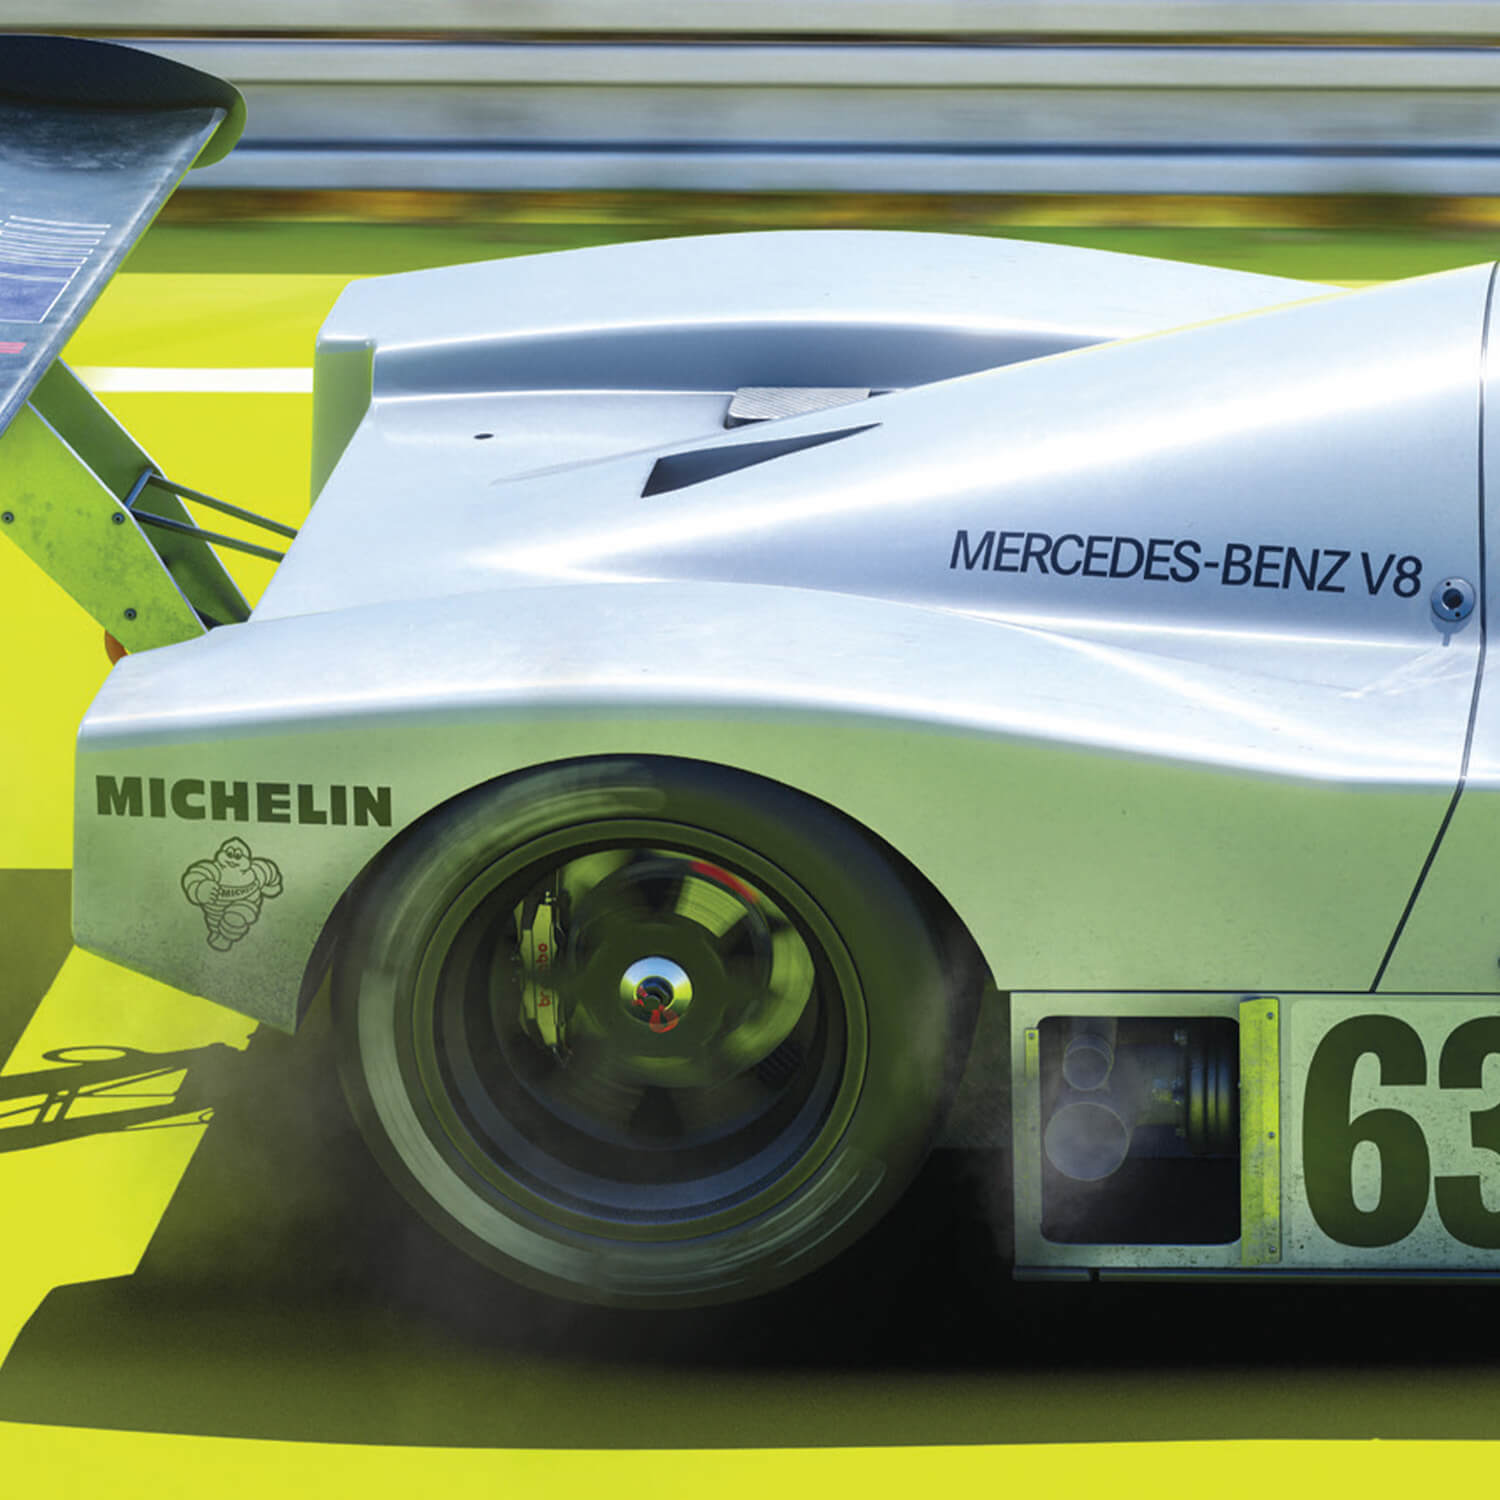 Sauber Mercedes C9 - 24h Le Mans - 100ème Anniversaire - 1989